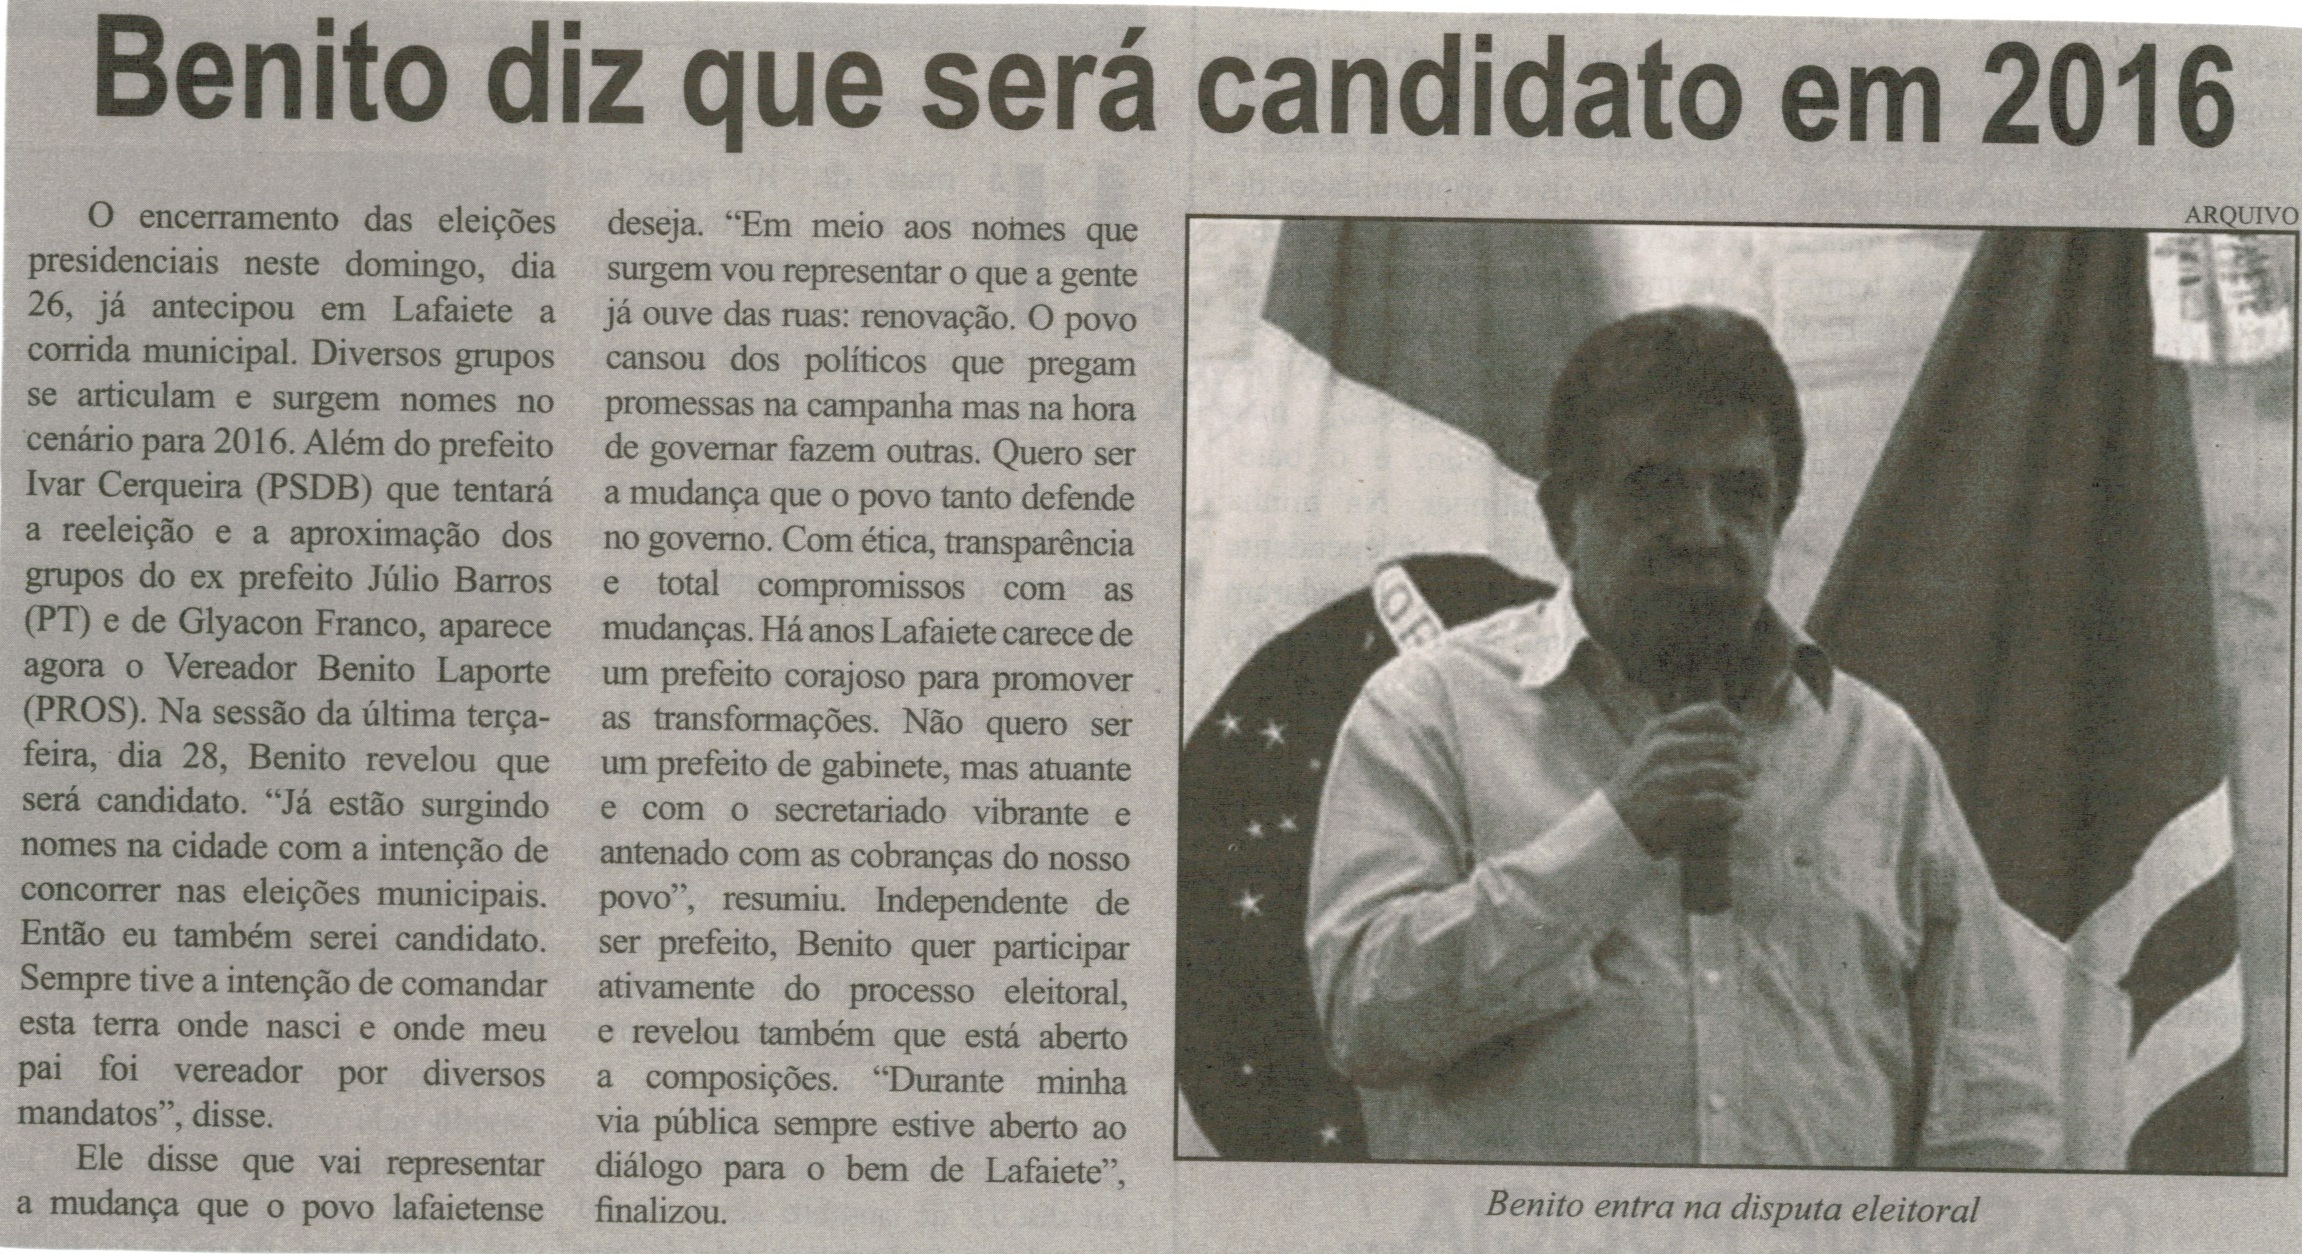 Benito diz que será candidato em 2016. Correio de Minas, Conselheiro Lafaiete,  01 nov. 2014, p. 3.